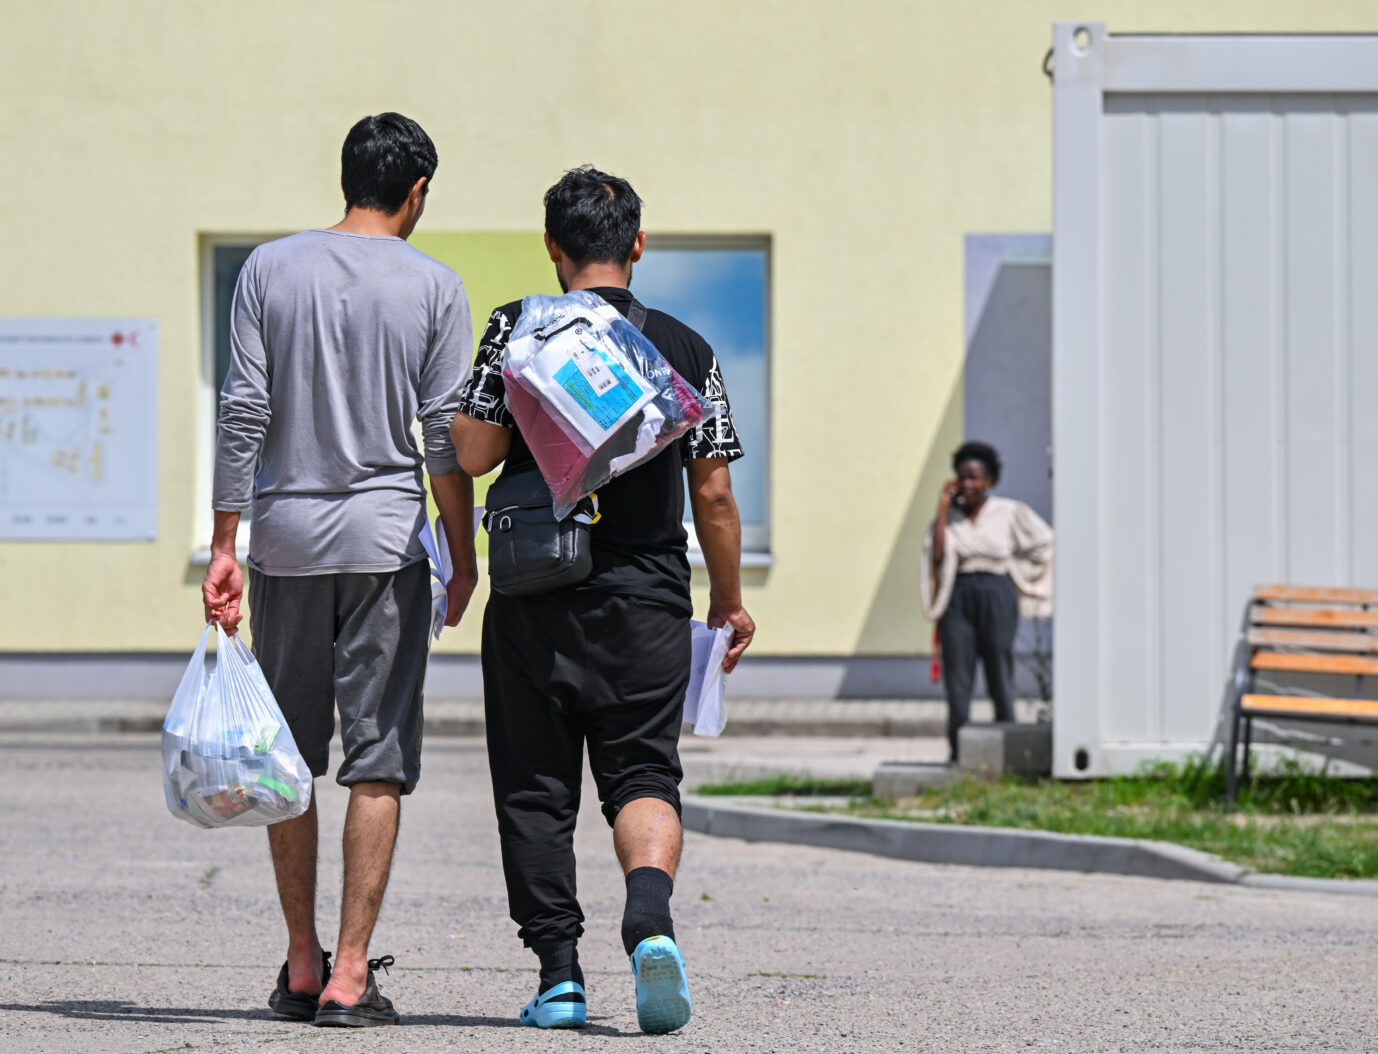 Im beschaulichen Hechingen in Baden-Württemberg steht eine neue Asylunterkunft. Kostenpunkt: 3,9 Millionen Euro. Die städtischen Bauherren zeigen sich zufrieden. Zwei Migranten gehen über das Gelände der Zentralen Erstaufnahmeeinrichtung für Asylbewerber (ZABH) des Landes Brandenburg. Die Ministerpräsidentenkonferenz wird am 20. Juni die Frage erörtern, ob Asylverfahren von Schutzsuchenden unter Achtung der völker- und menschenrechtlichen Vorgaben in einen kooperierenden Staat außerhalb der EU verlagert werden können.